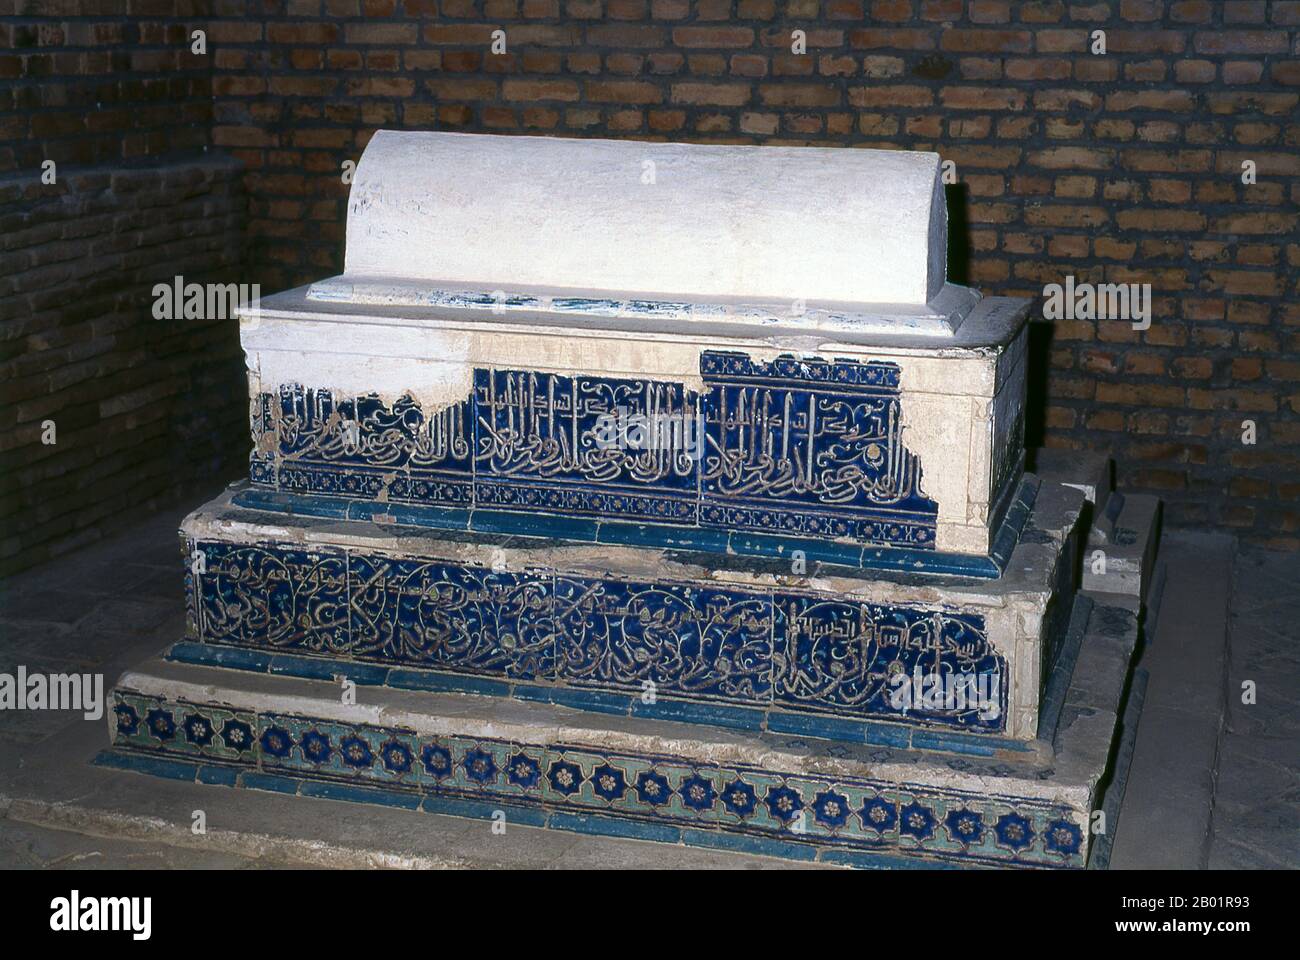 Usbekistan: Grab von Kussam ibn Abbas, Shah-i-Zinda, Samarkand. Shah-i-Zinda („der lebende König“) ist eine Nekropole im nordöstlichen Teil von Samarkand. Das Shah-i-Zinda Ensemble umfasst Mausoleen und andere rituelle Gebäude aus dem 9.-14. Und 19. Jahrhundert. Der Name Shah-i-Zinda steht im Zusammenhang mit der Legende, dass Kusam ibn Abbas, ein Cousin des Propheten Muhammad, hier begraben ist. Es wird angenommen, dass er mit der arabischen Invasion im 7. Jahrhundert nach Samarkand kam, um den Islam zu predigen. Populäre Legenden sagen, dass er von zoroastrischen Feueranbetern wegen seines Glaubens enthauptet wurde. Stockfoto